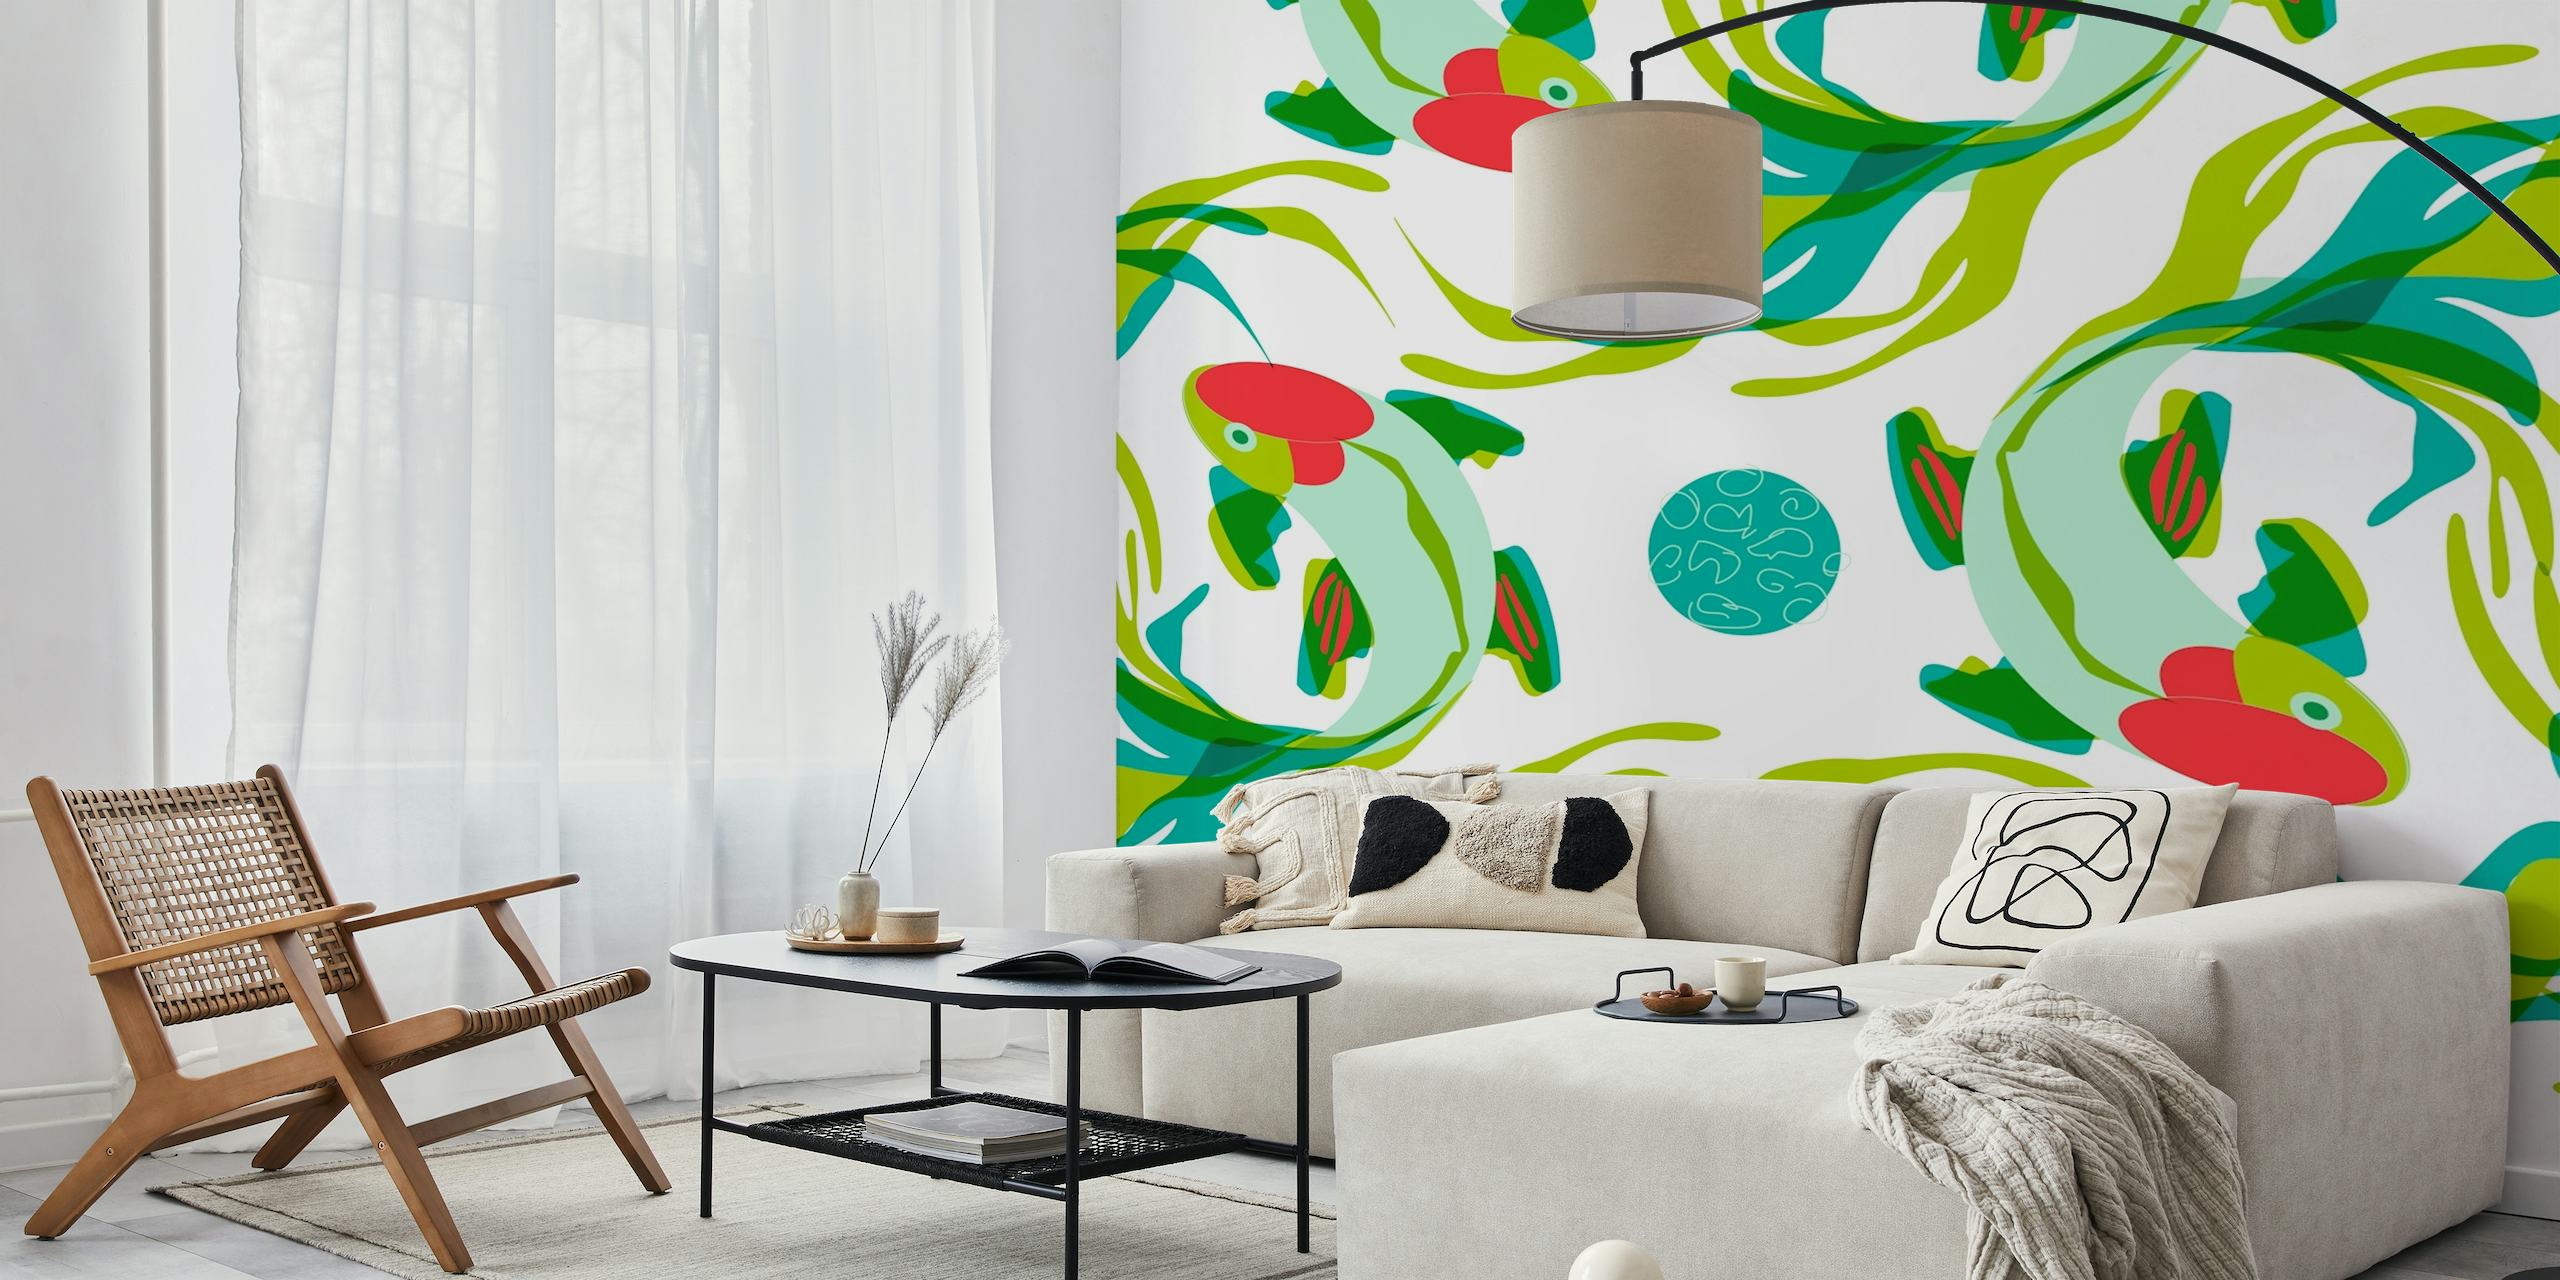 Artístico mural de pared con peces koi y vegetación para una decoración interior tranquila.